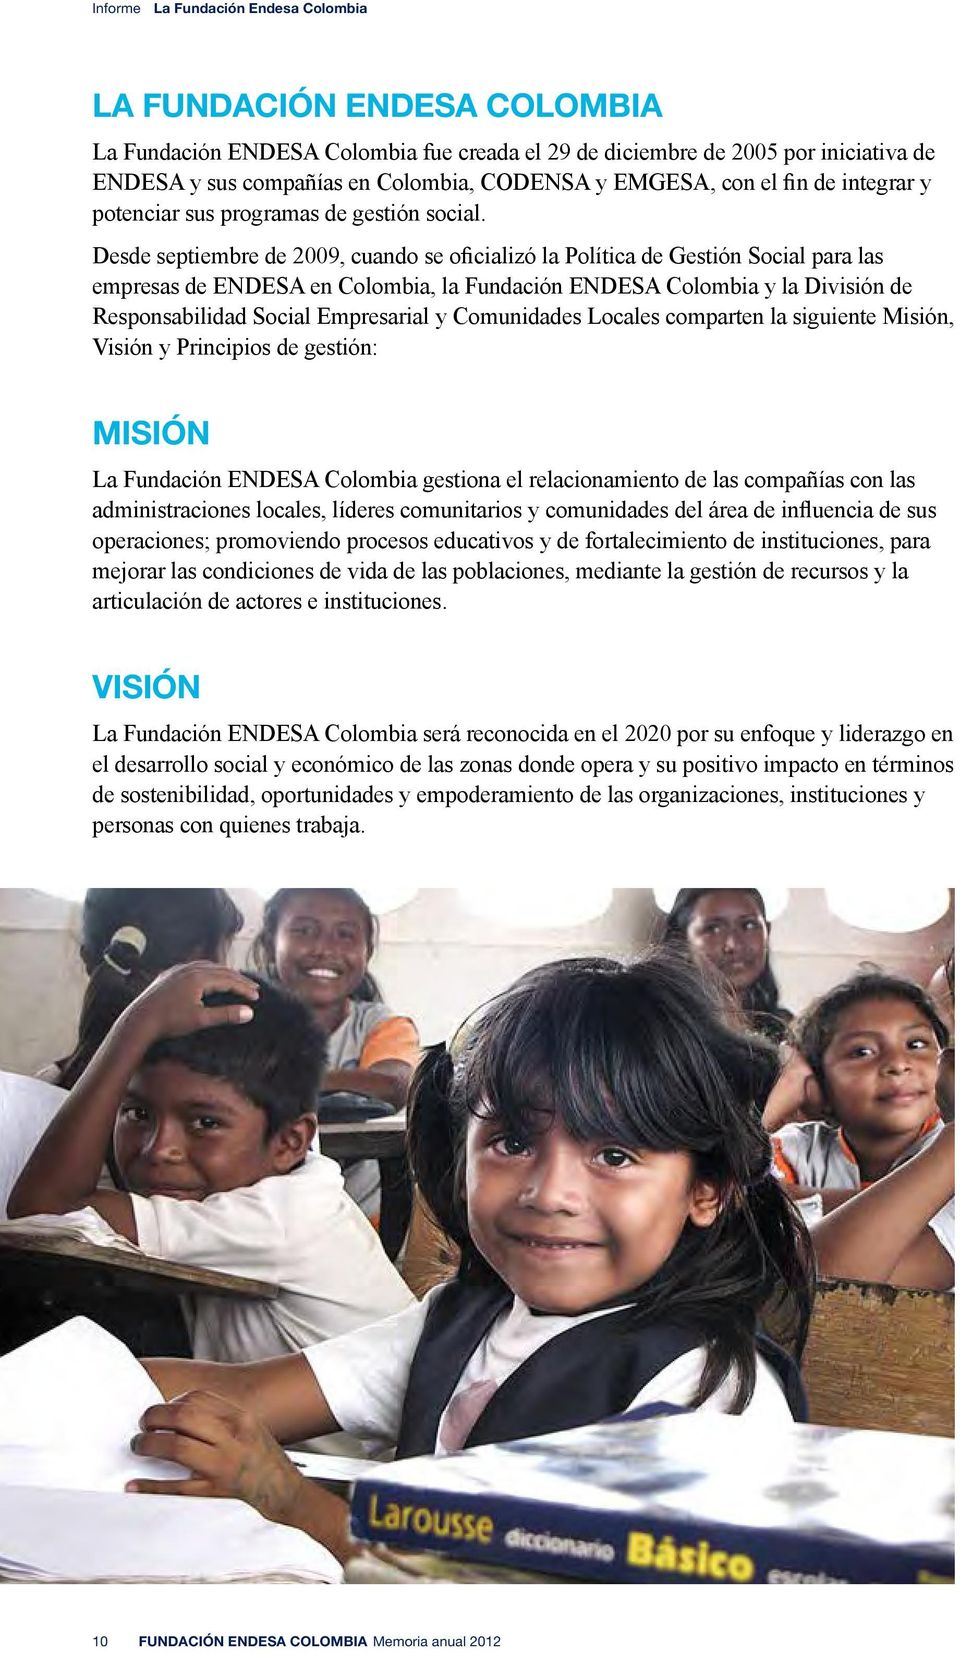 Desde septiembre de 2009, cuando se oficializó la Política de Gestión Social para las empresas de ENDESA en Colombia, la Fundación ENDESA Colombia y la División de Responsabilidad Social Empresarial